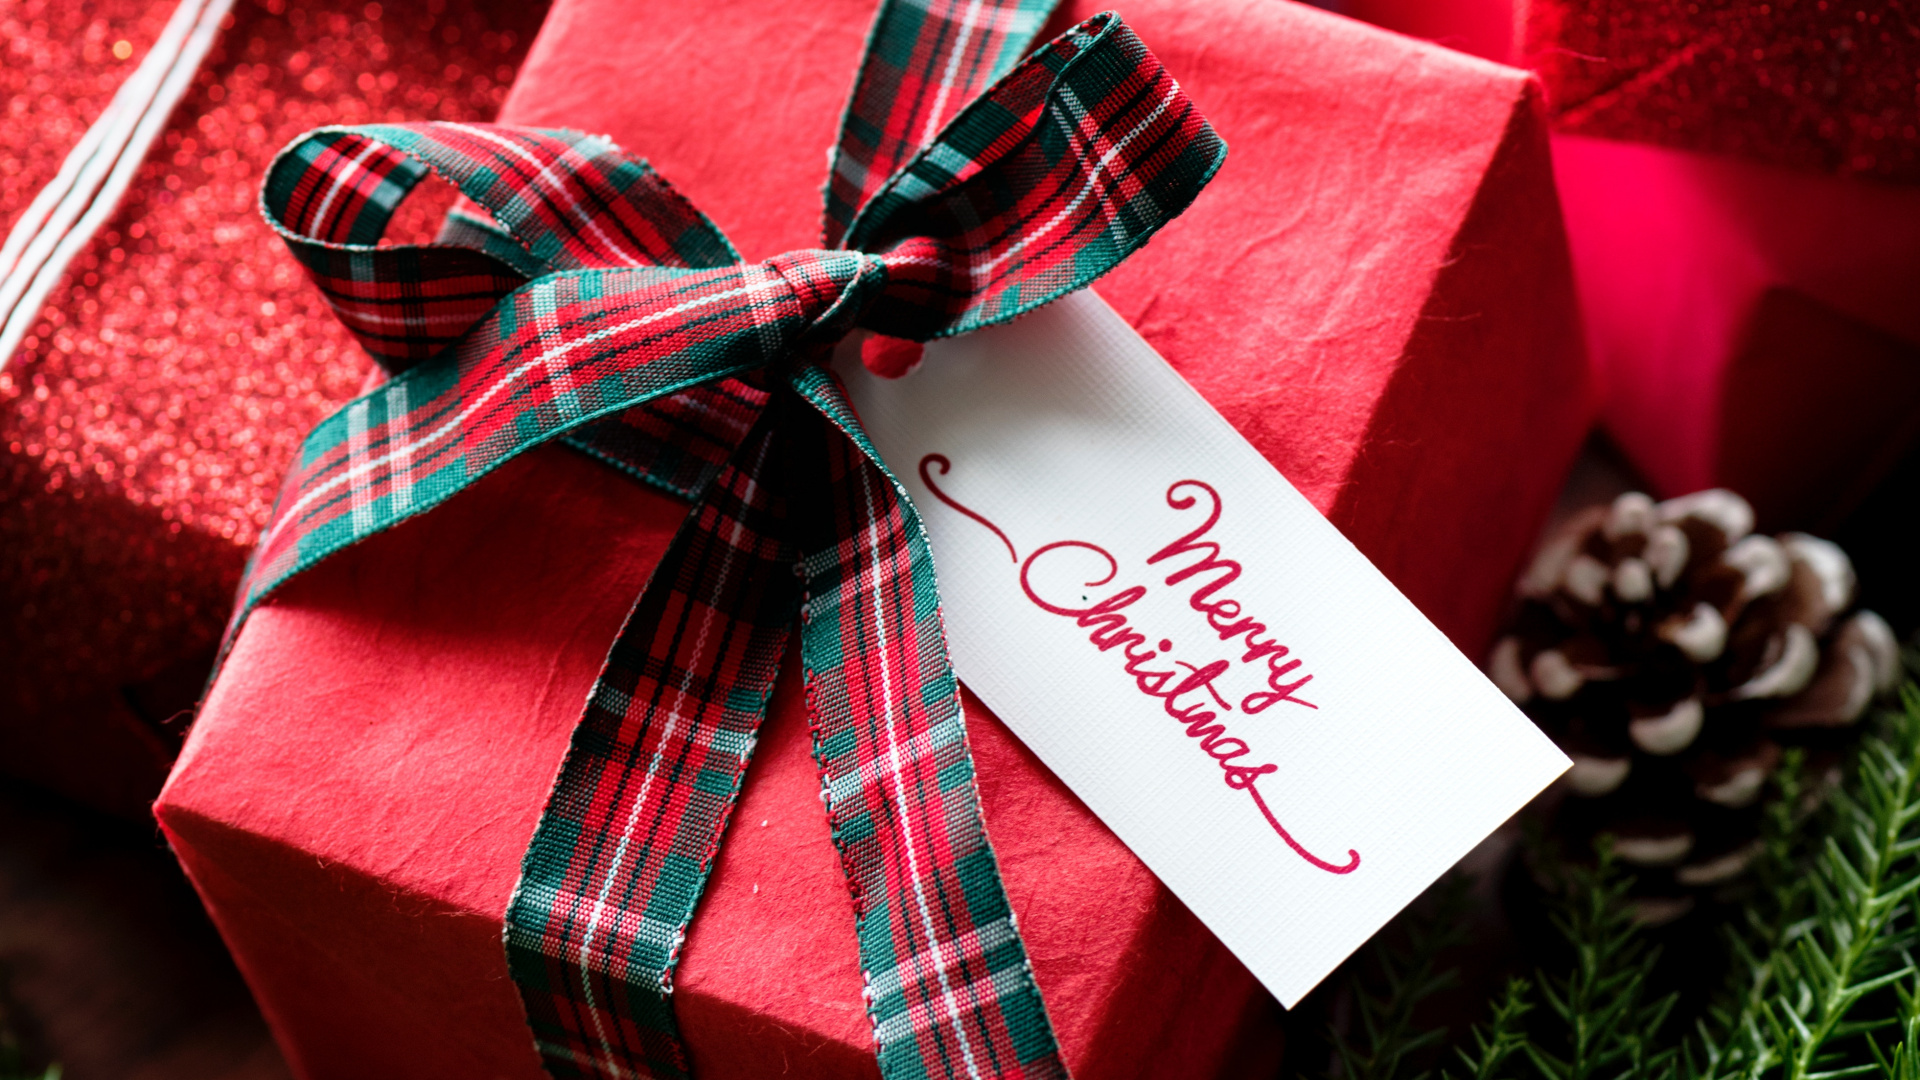 礼物, 圣诞节礼物, 礼品包装, 圣诞节那天, 丝带 壁纸 1920x1080 允许